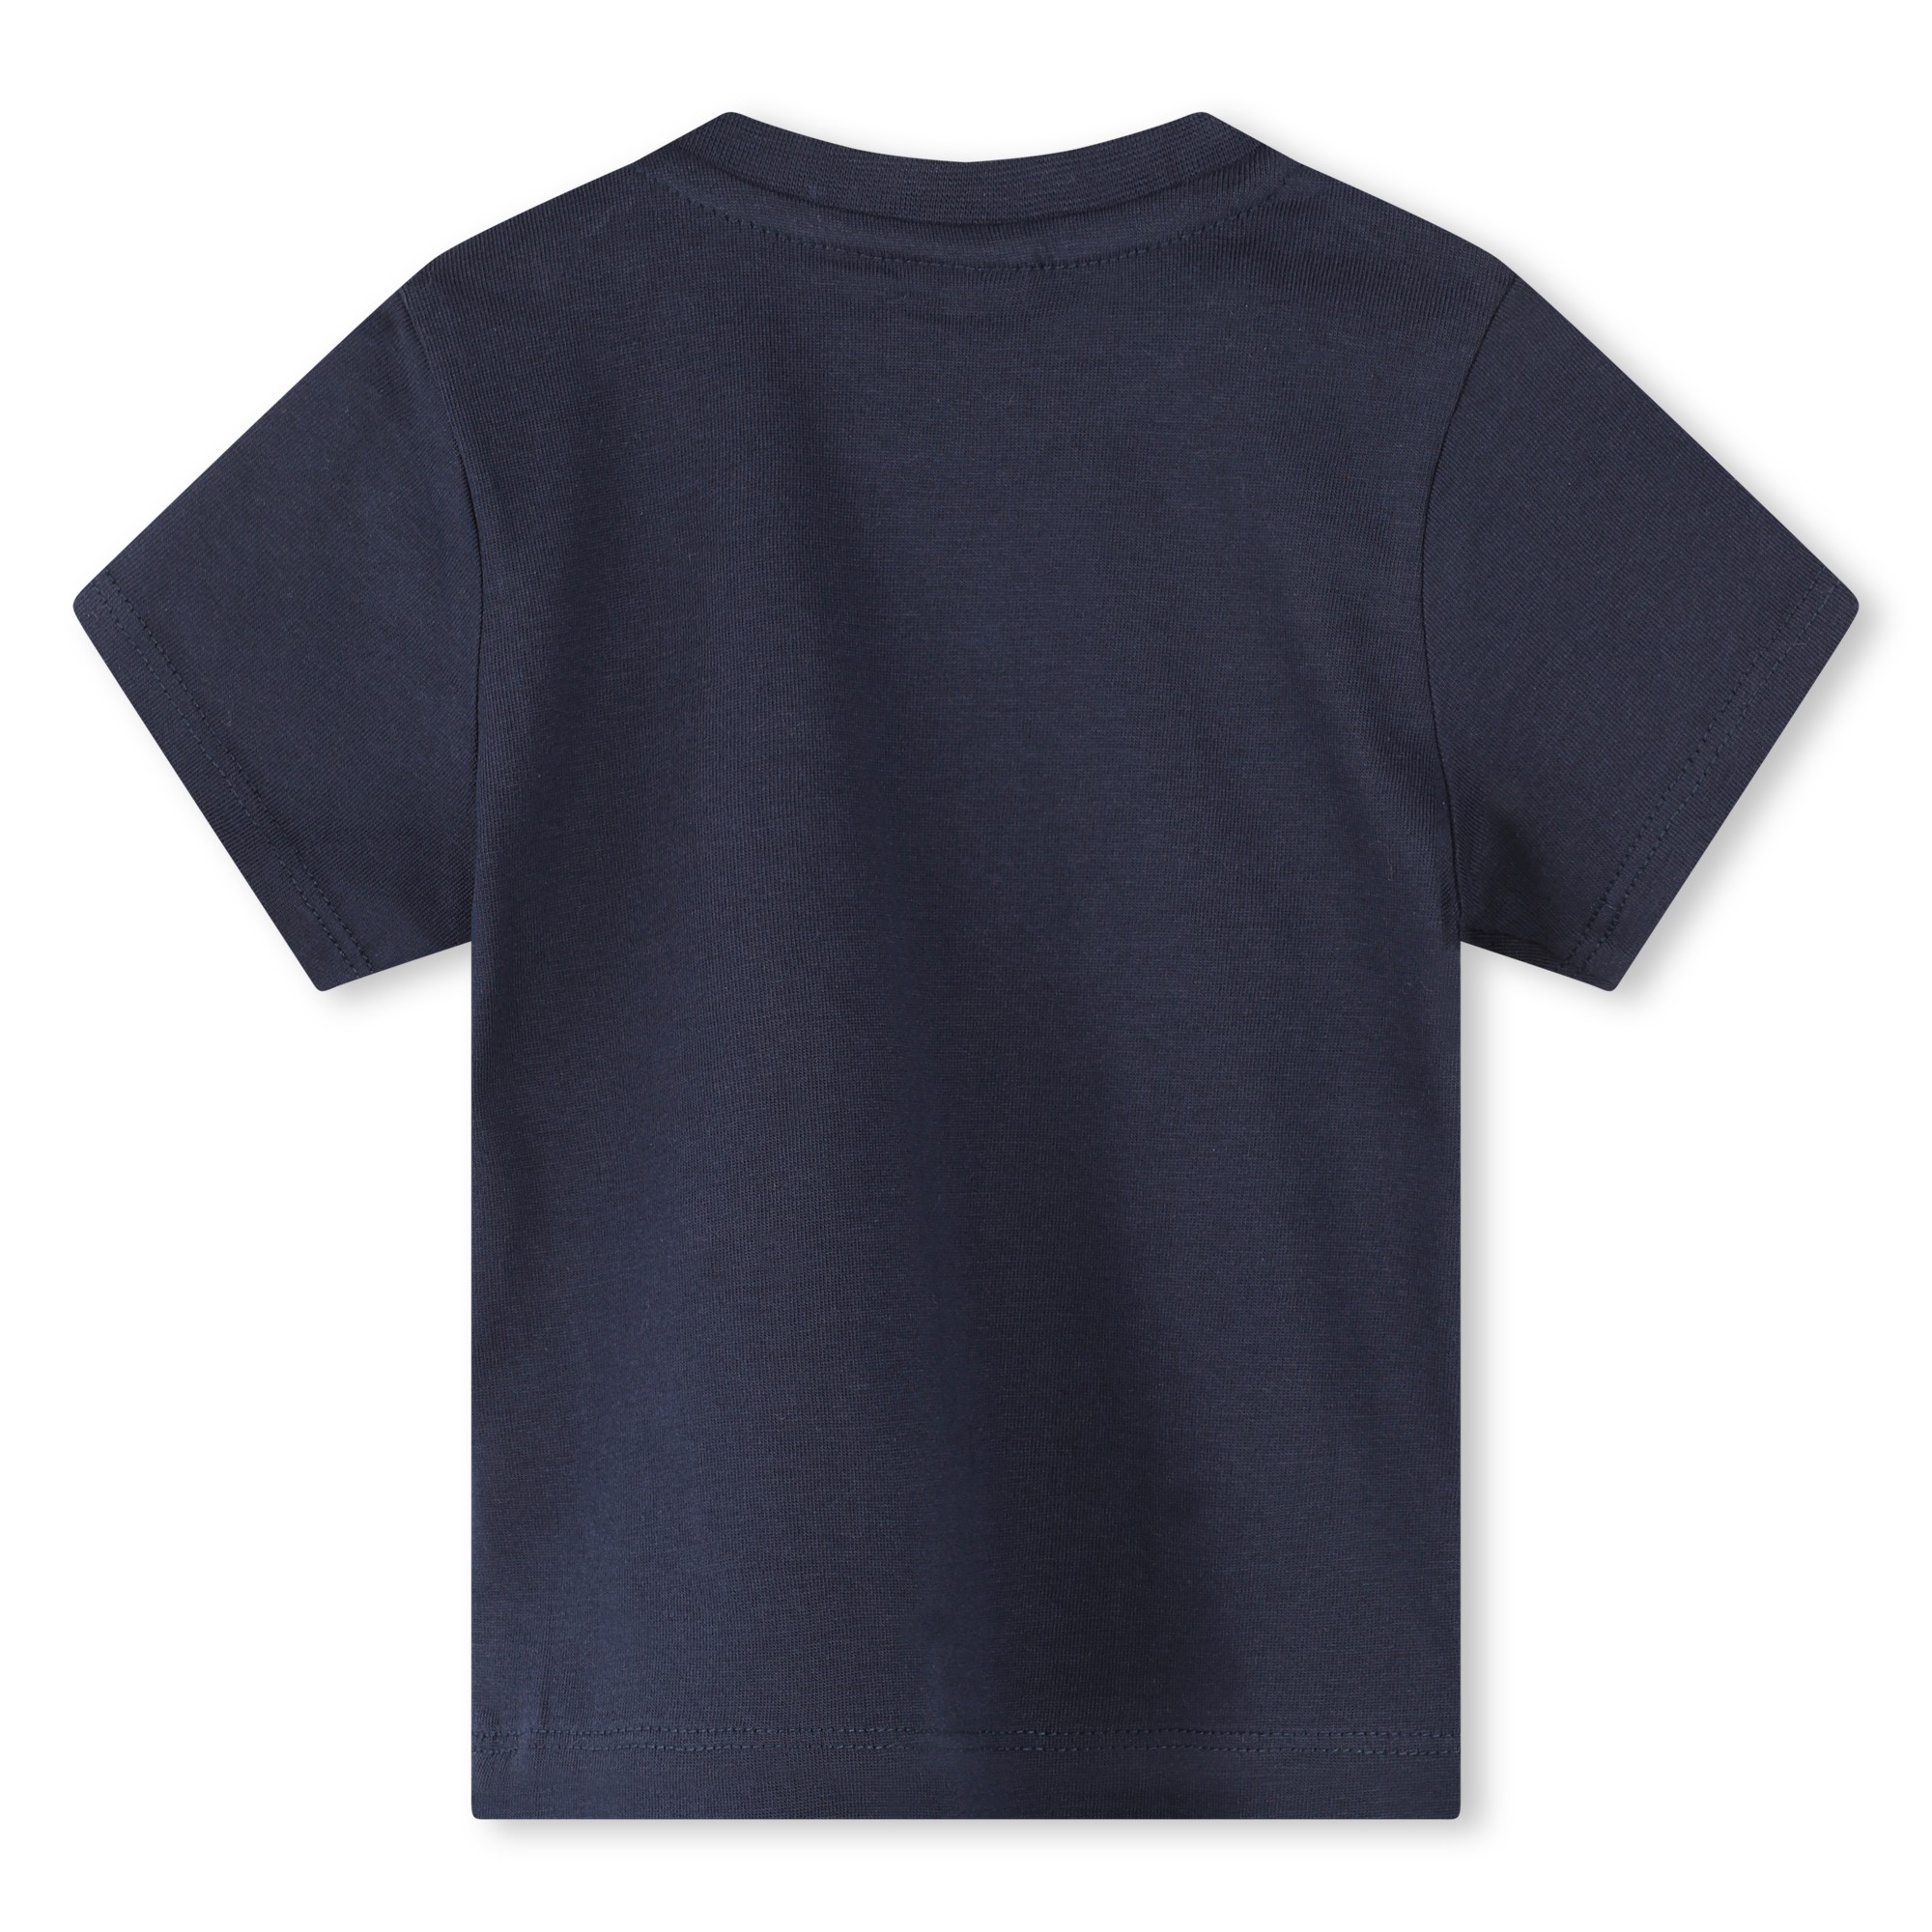 T-Shirt mit Druckknöpfen BOSS Für JUNGE